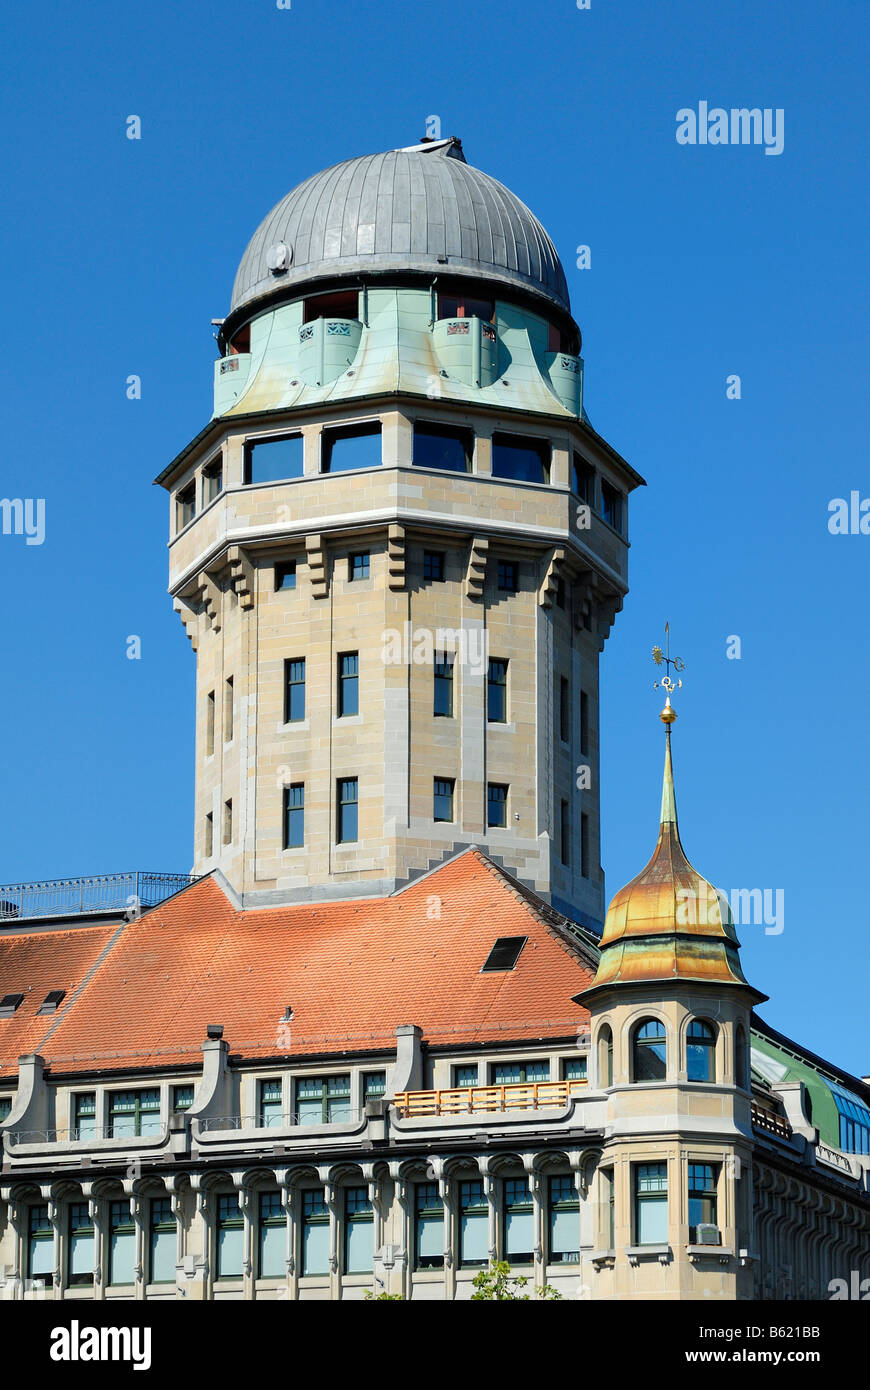 Zurich observatorium on the Urania Tower, Zurich, Canton of Zurich, Switzerland, Europe Stock Photo